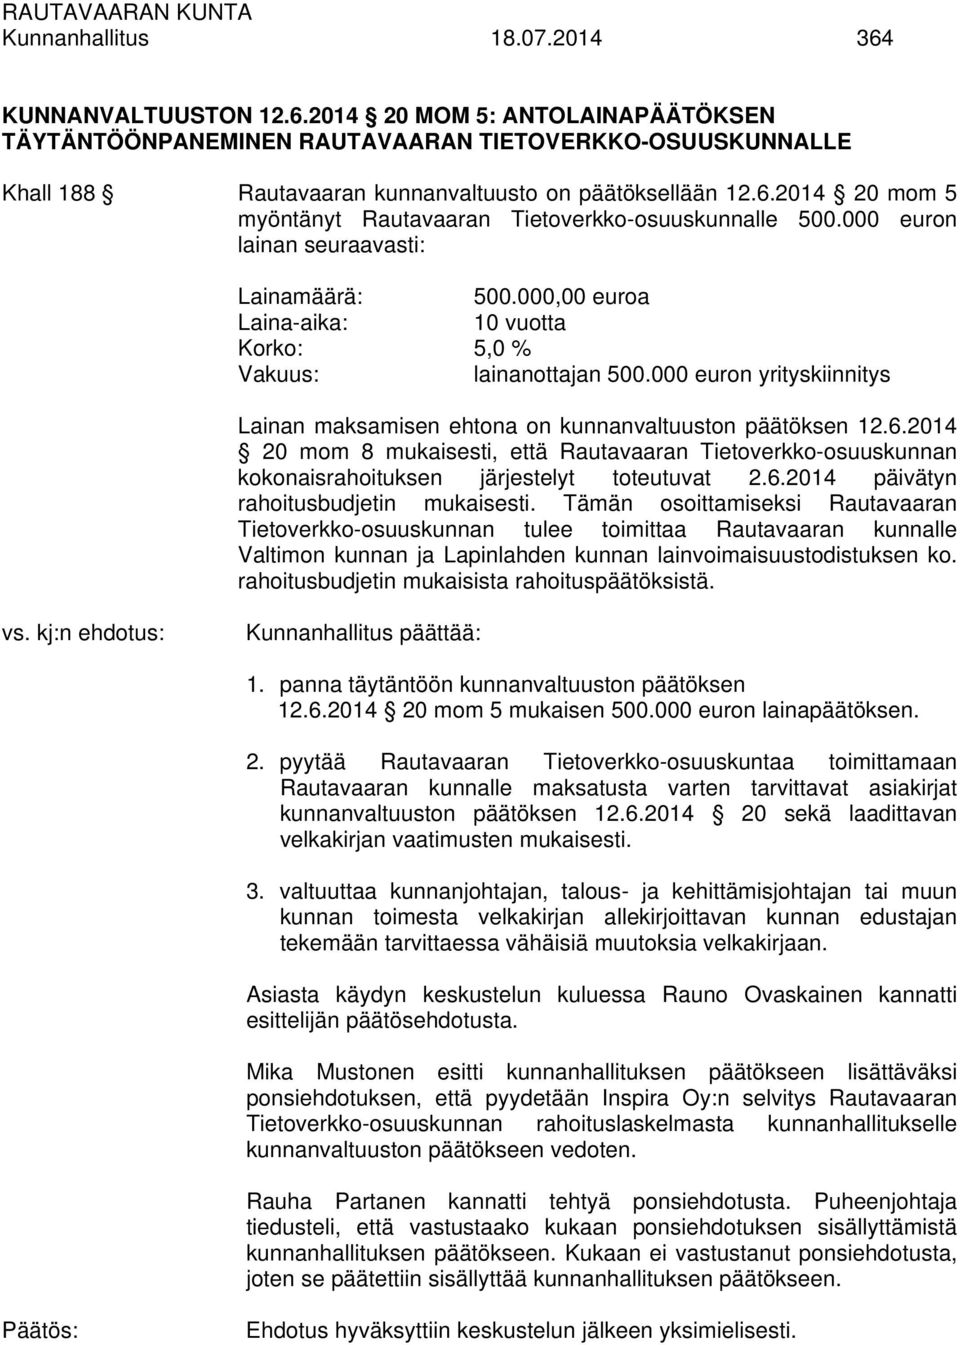 2014 20 mom 8 mukaisesti, että Rautavaaran Tietoverkko-osuuskunnan kokonaisrahoituksen järjestelyt toteutuvat 2.6.2014 päivätyn rahoitusbudjetin mukaisesti.